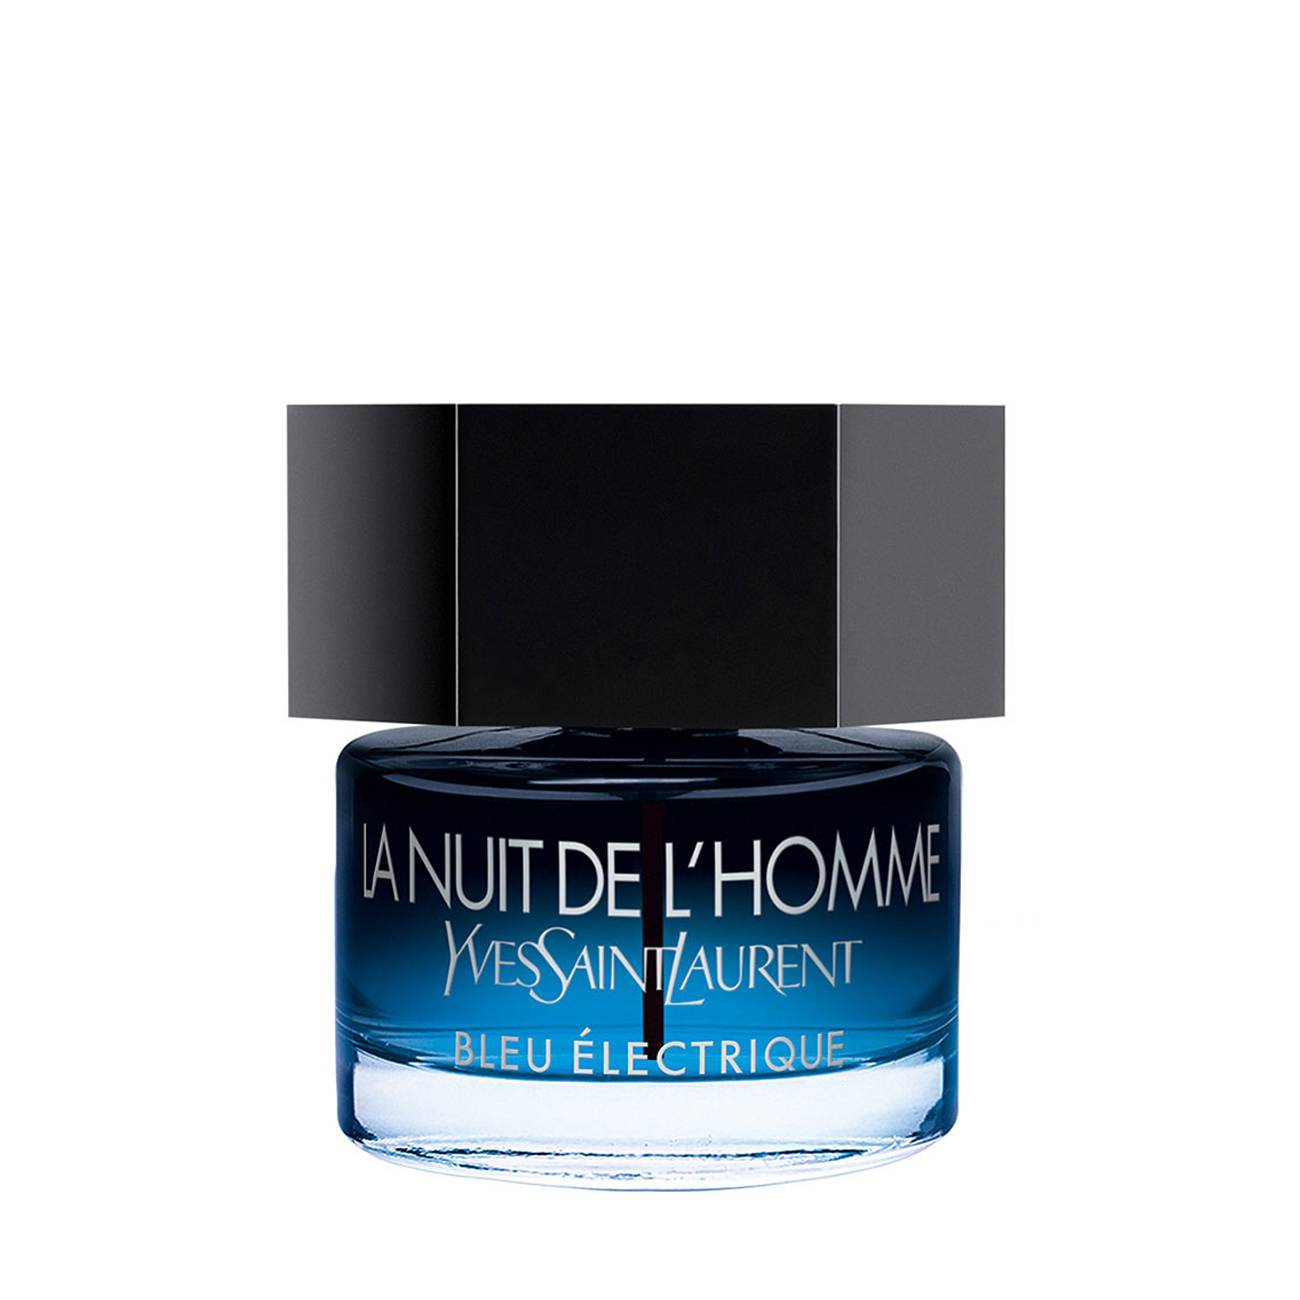 La Nuit de L’Homme Bleu Électrique 40 ml Yves Saint Laurent bestvalue.eu imagine noua